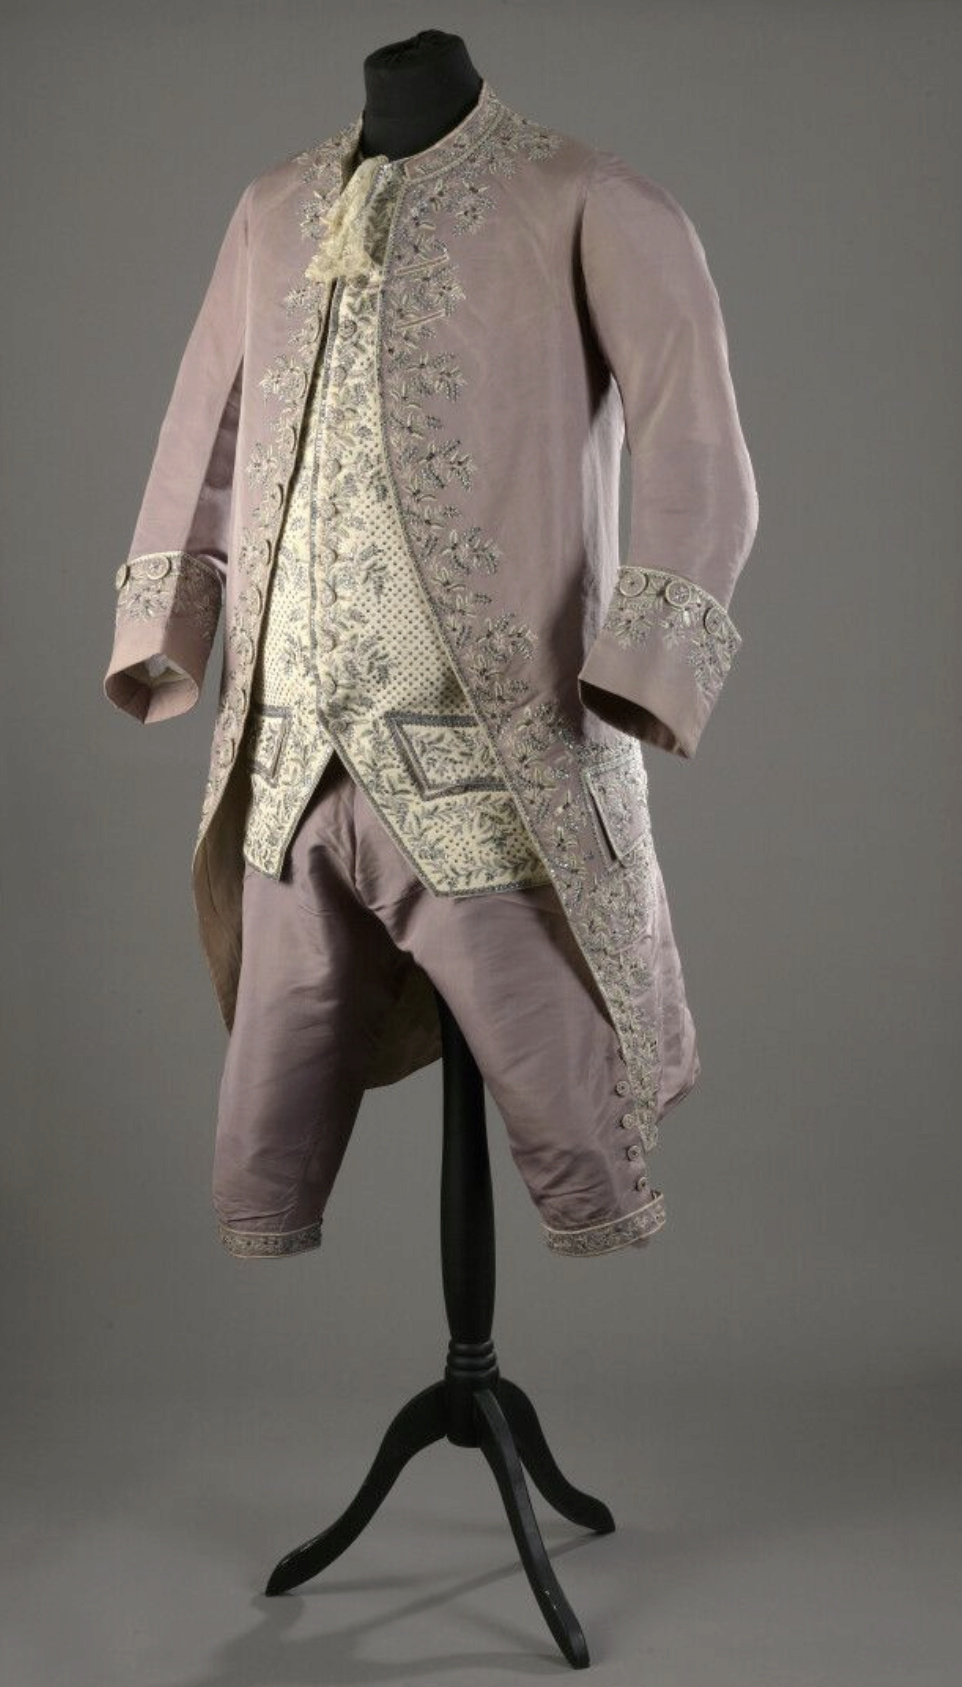 La mode et les habits masculins au XVIIIe siècle - Page 4 Captu897